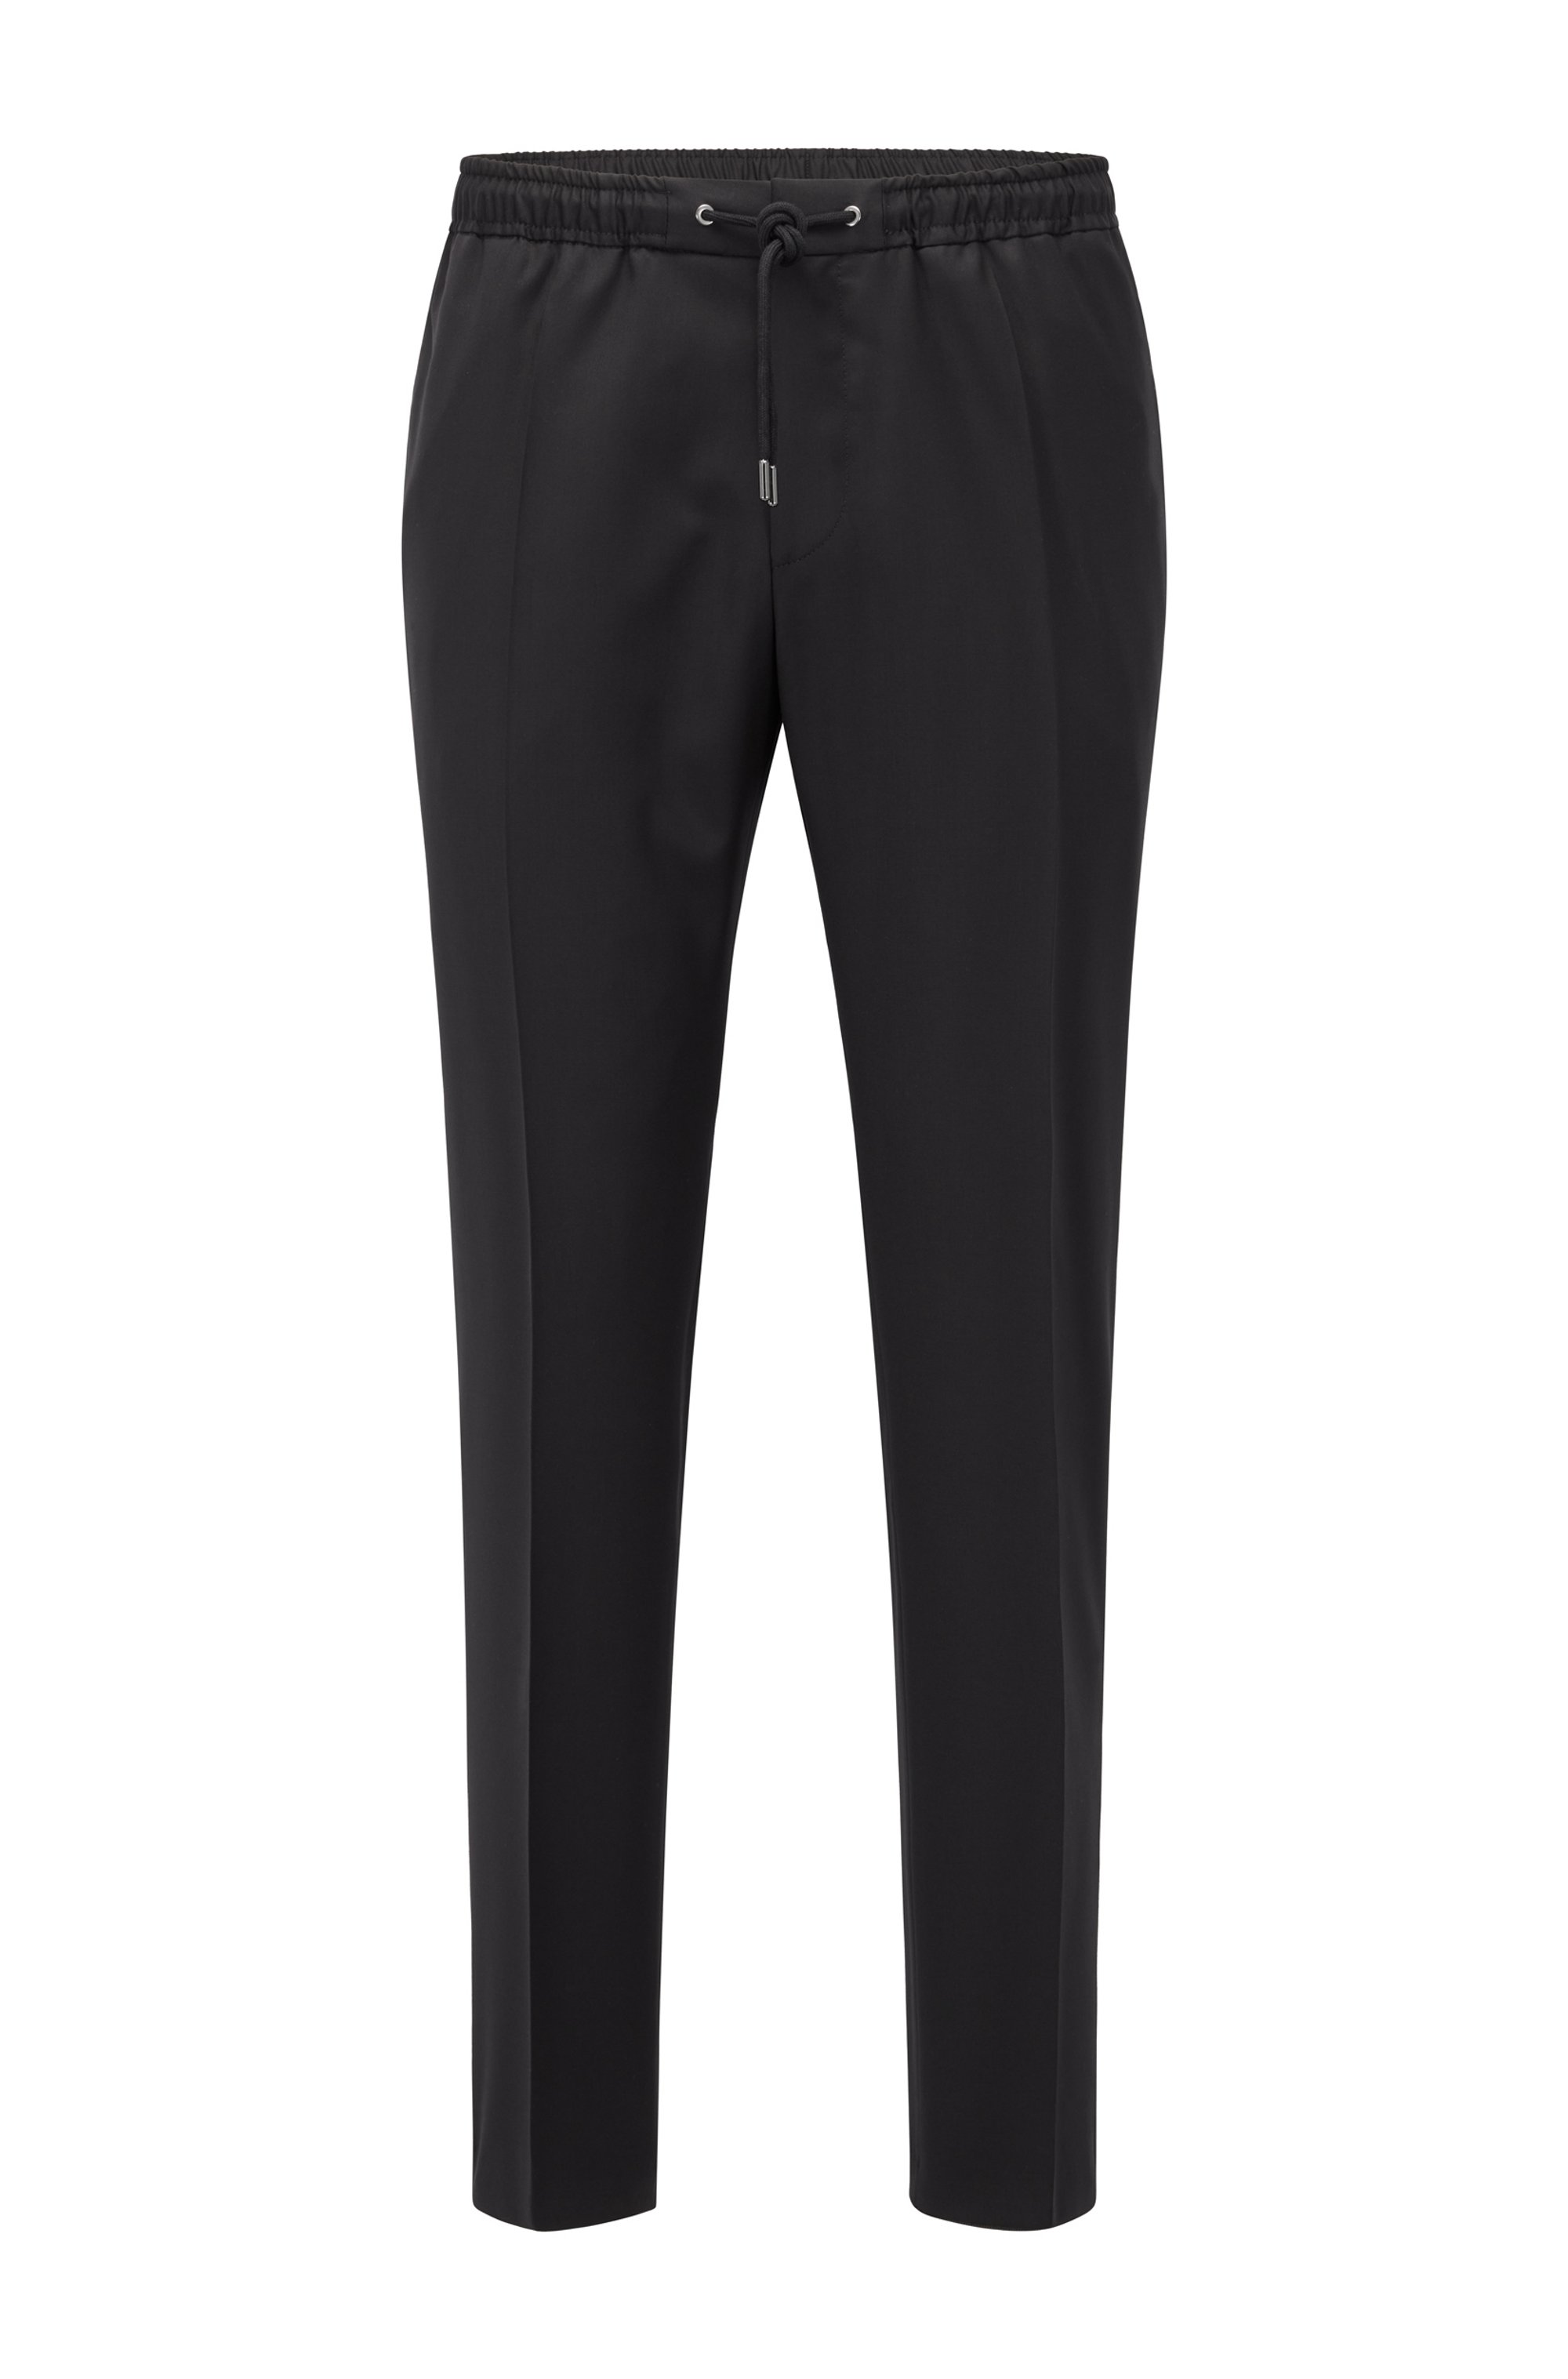 Slim-fit pants in virgin wool with drawstring waist, Black